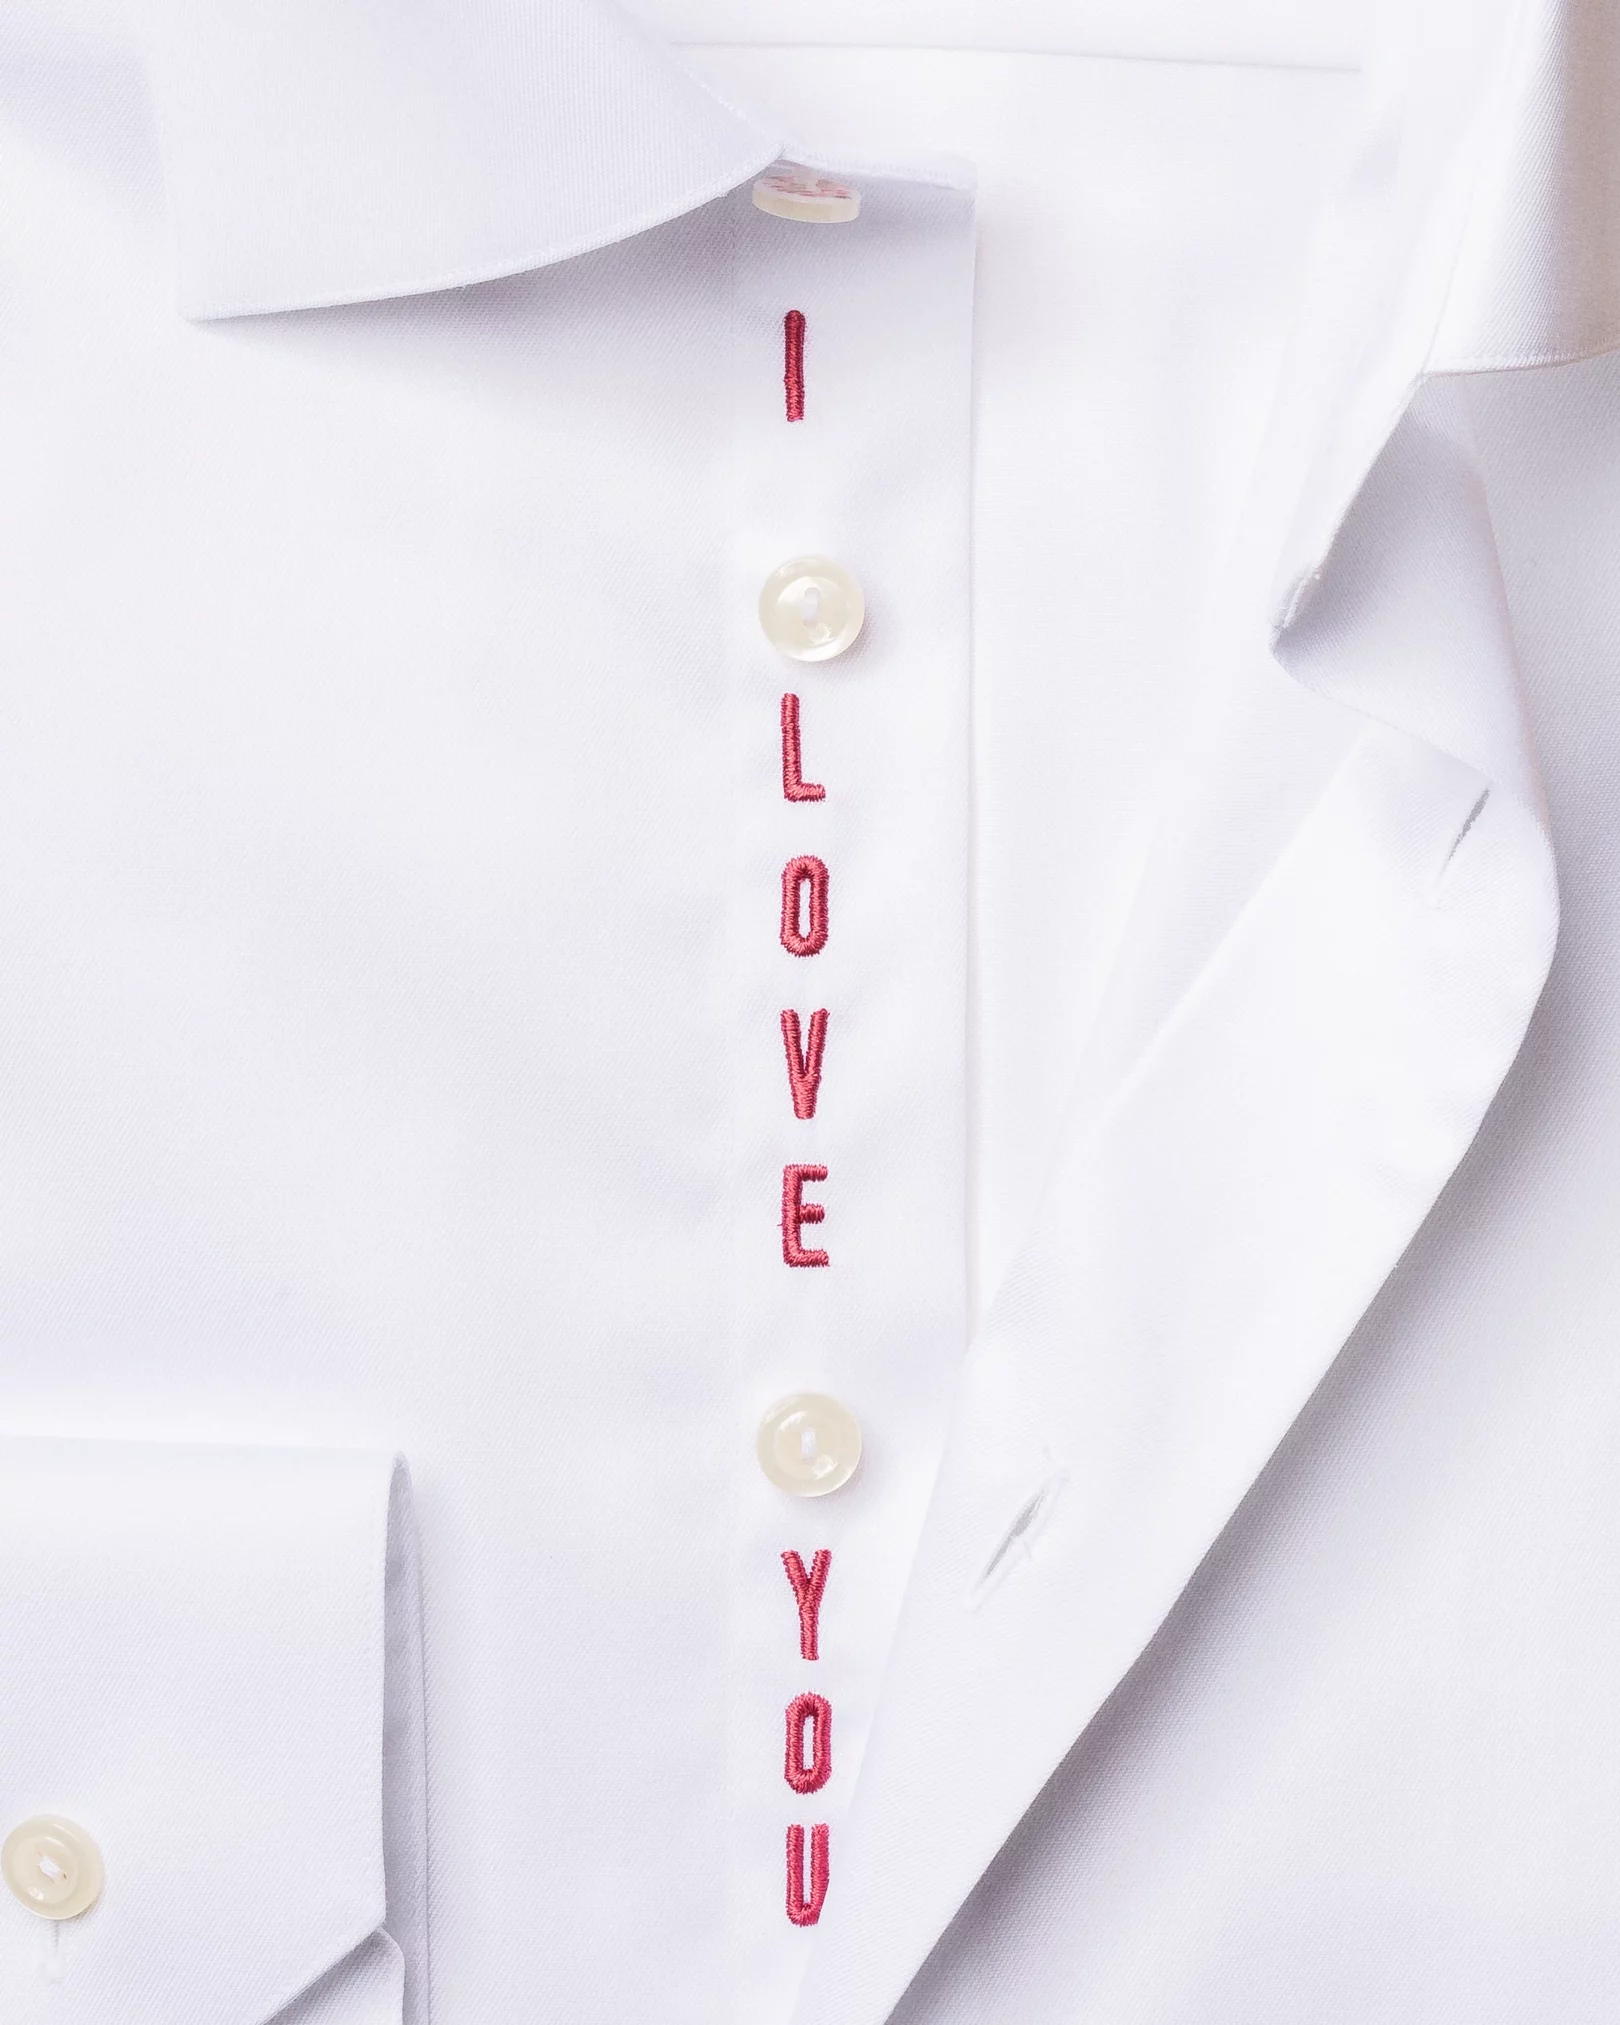 Eton - white love embroidery shirt